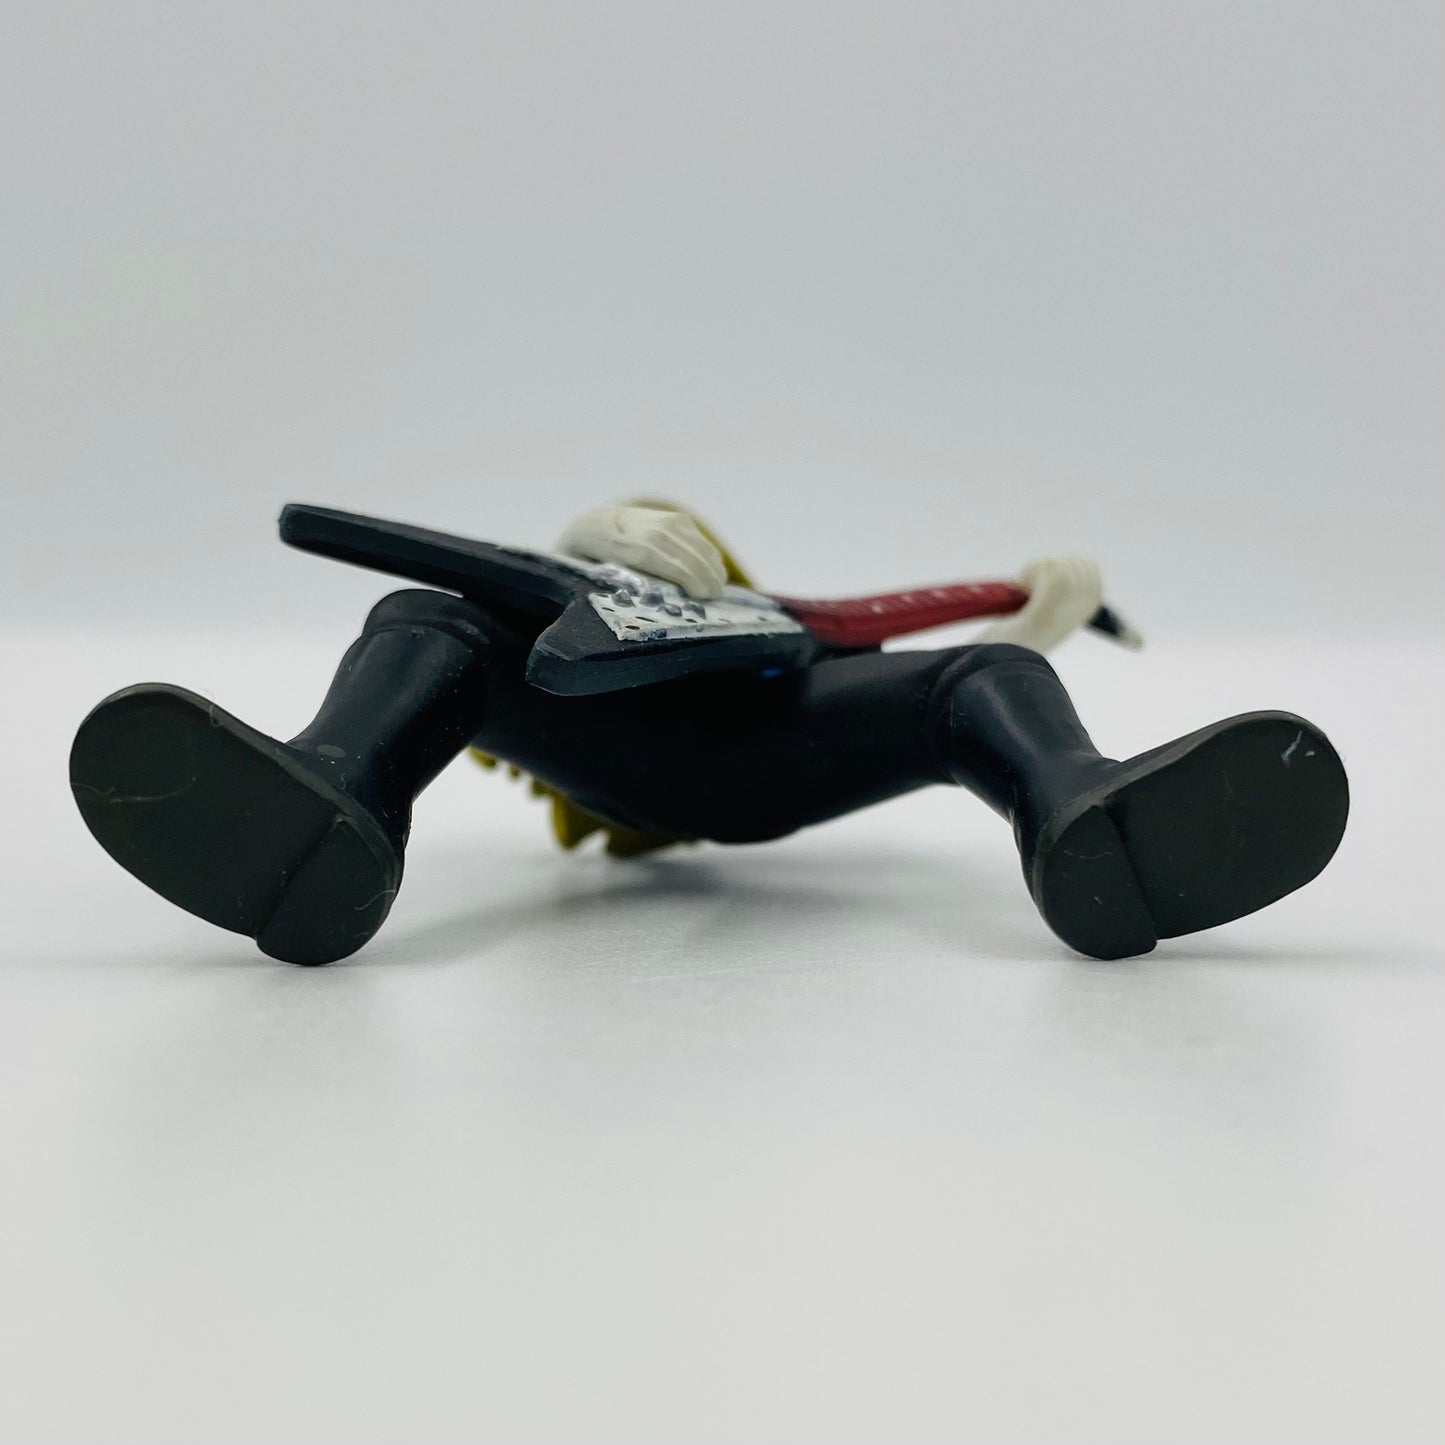 Adult Swim Metalacolypse Toki Wartooth loose 2“ figurine (2008) KidRobot